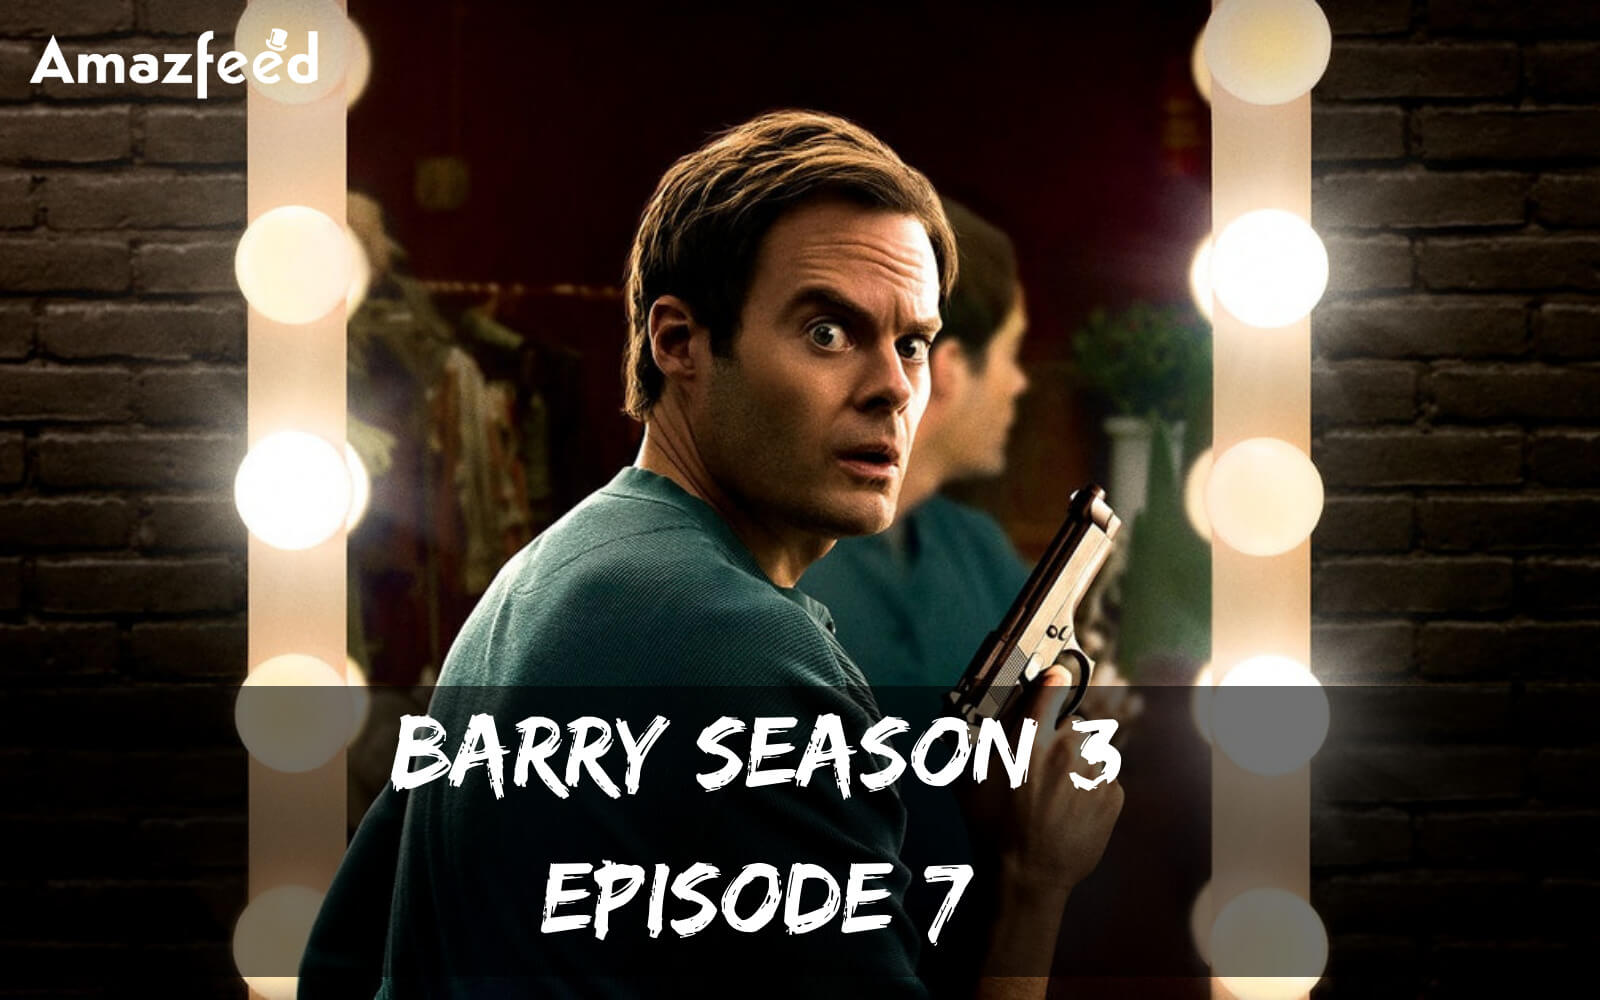 Barry Season 3 Episode 7 release date